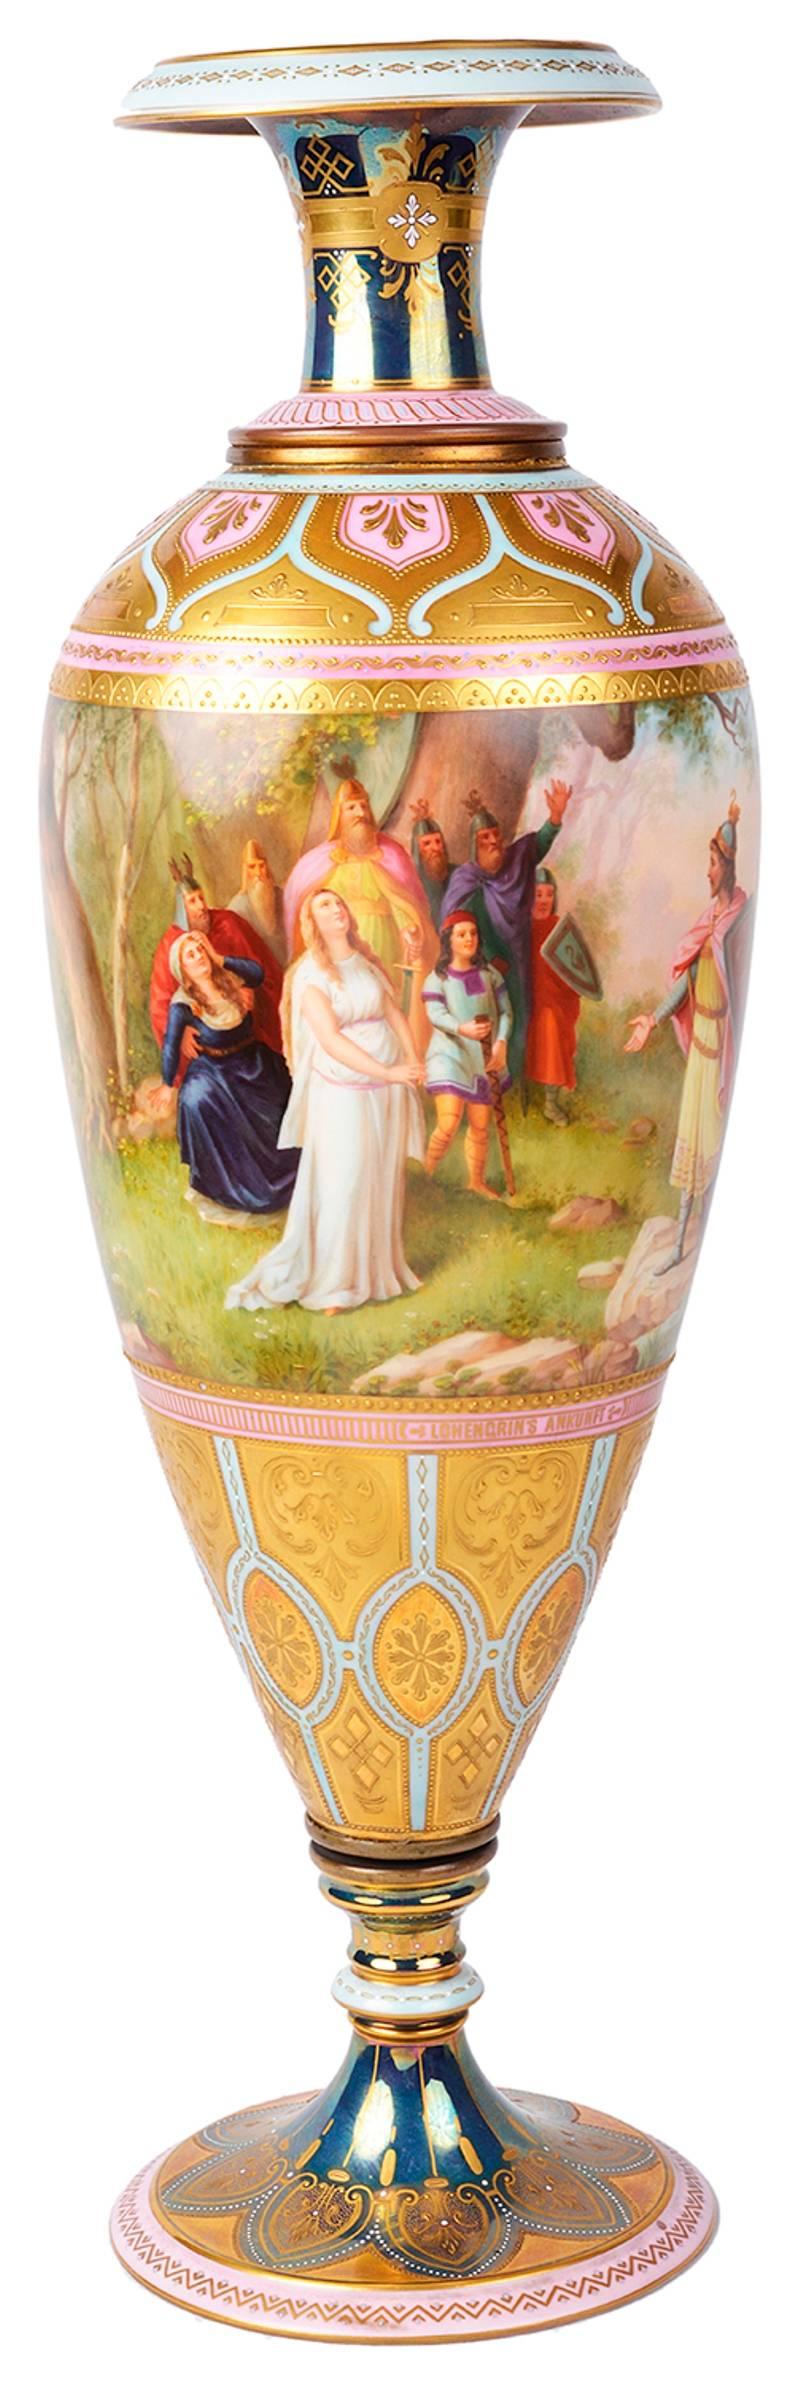 Vase en porcelaine de Vienne de très bonne qualité, datant du XIXe siècle, représentant des scènes classiques et des bordures dorées.